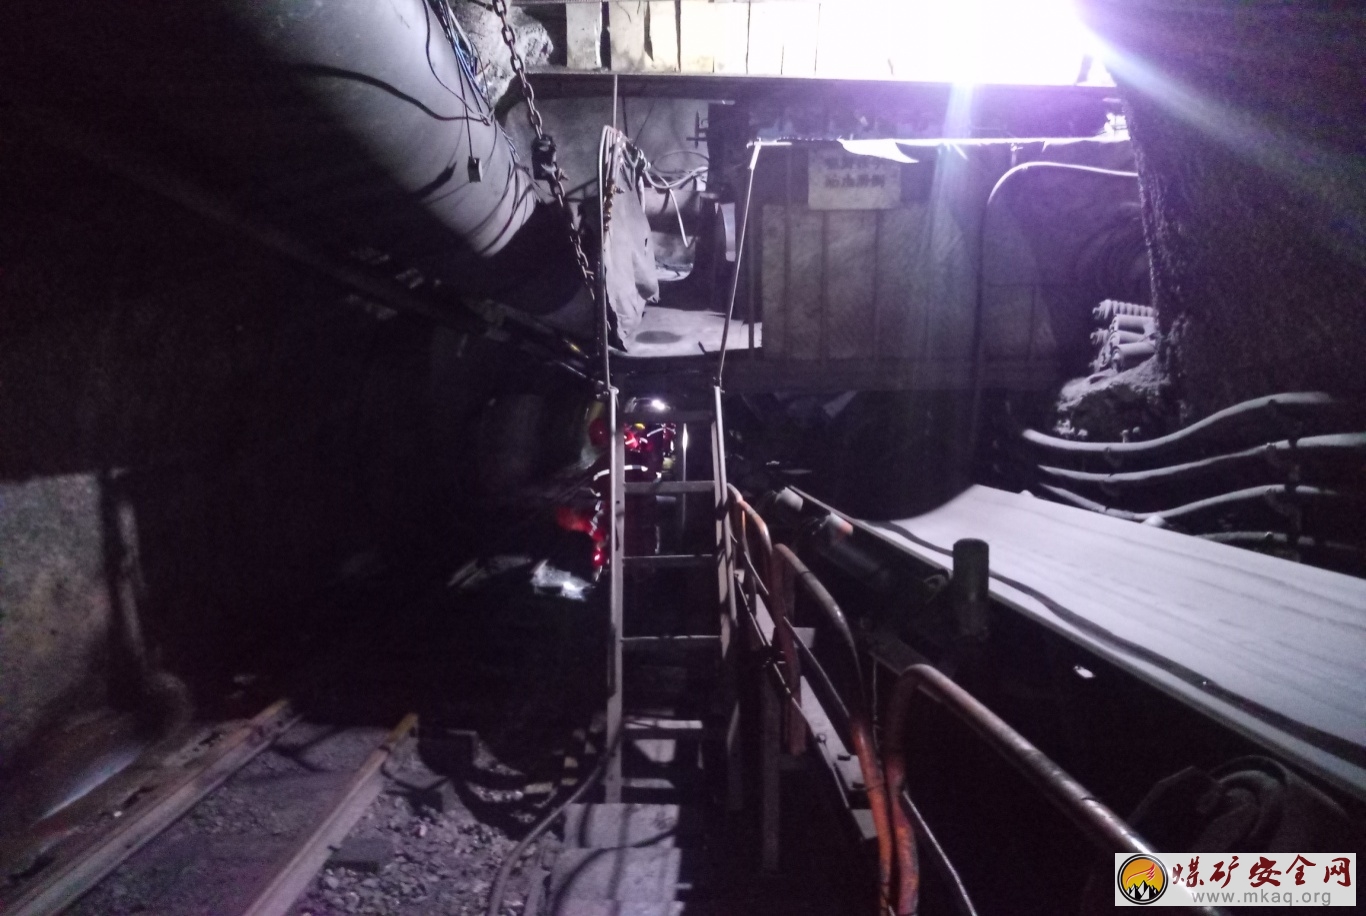 窯街煤電集團天祝煤業有限責任公司“8•21”運輸事故調查報告